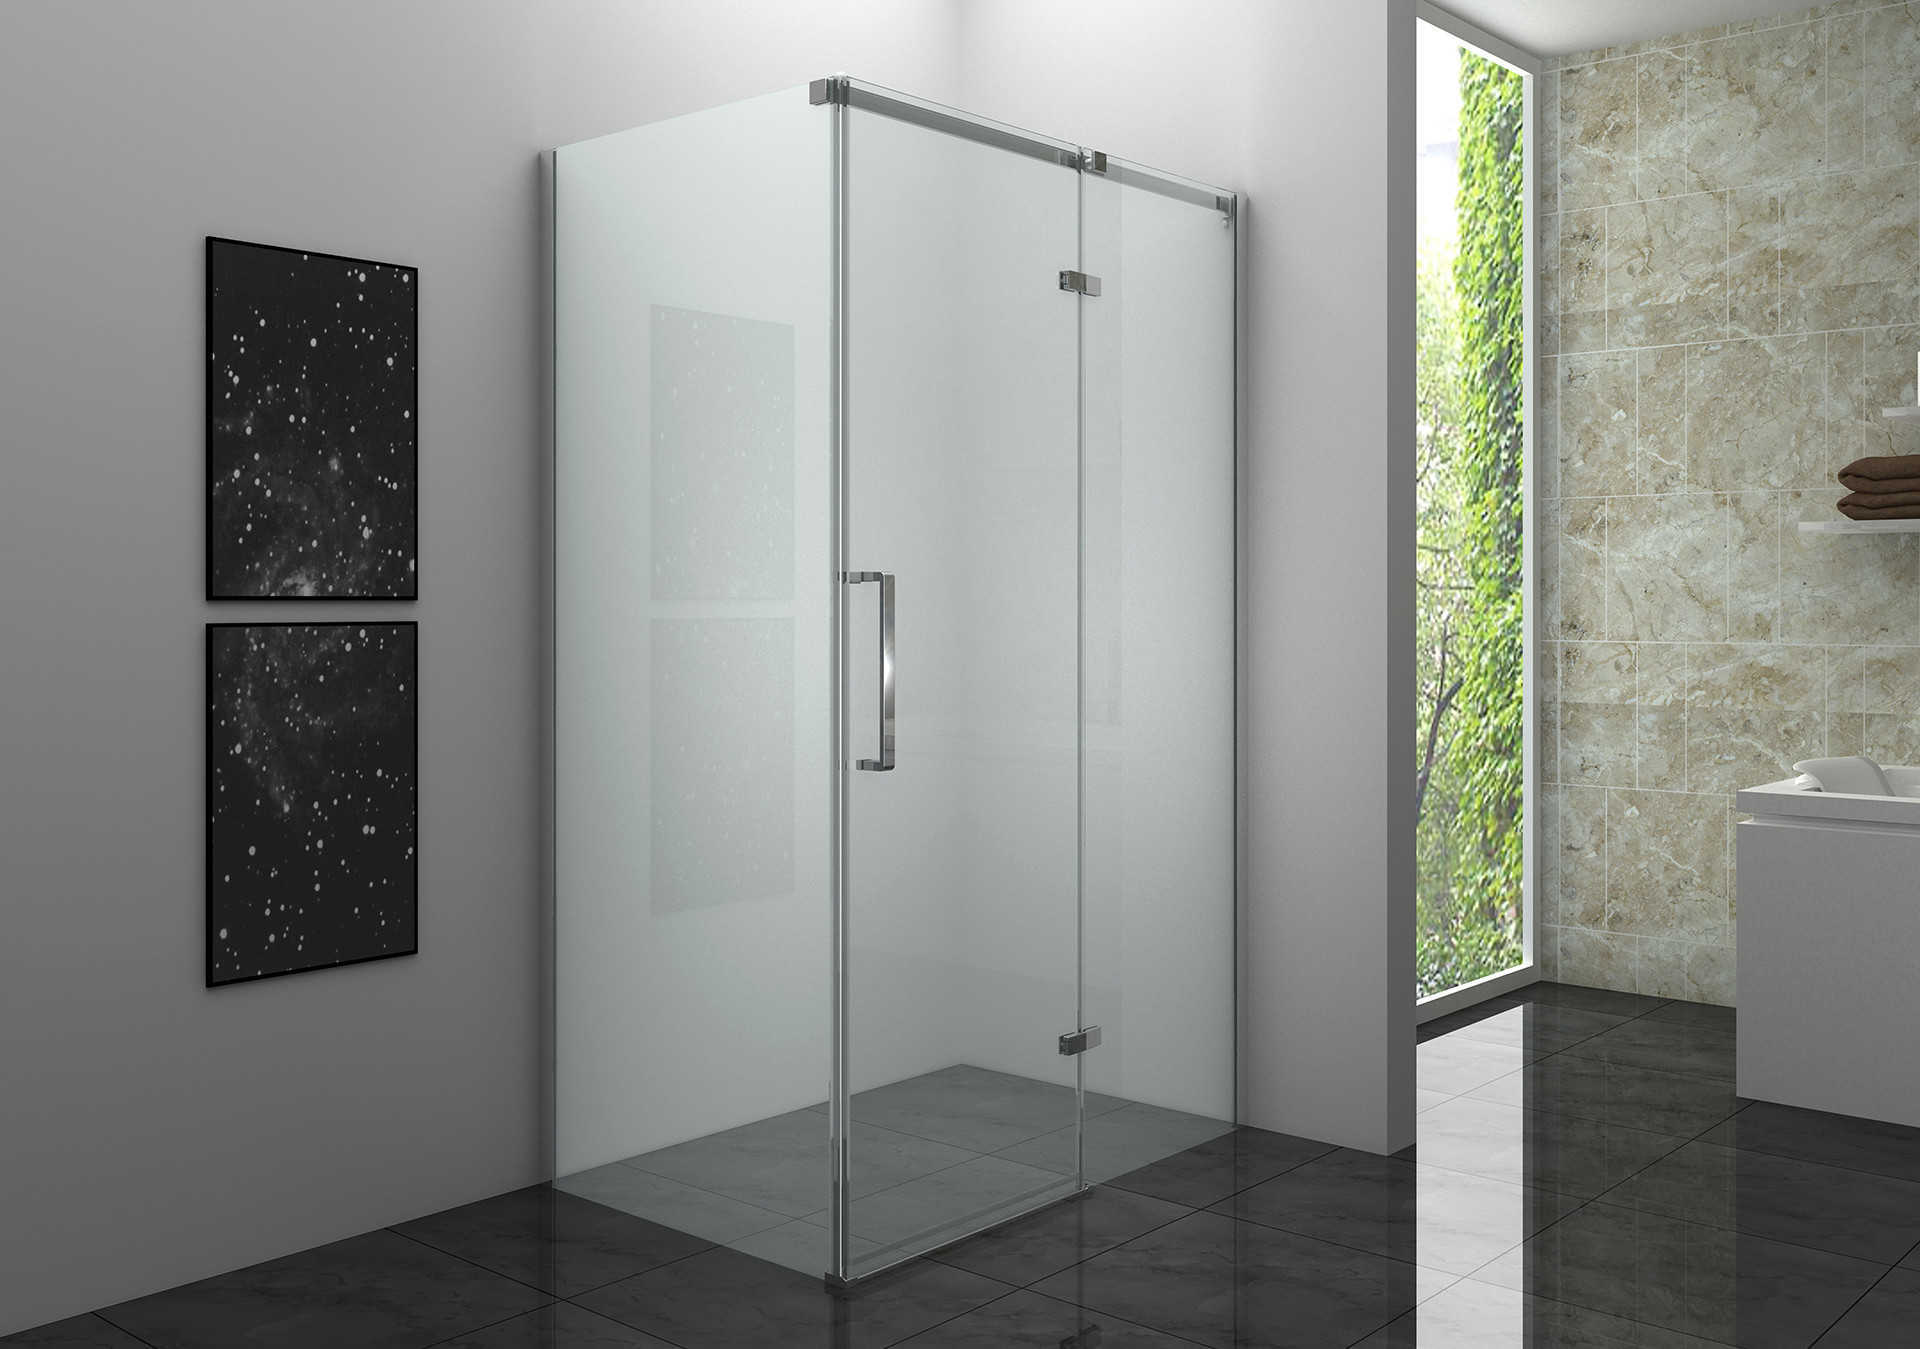 转角双门象限淋浴房是一种设计用于安装在浴室角落的淋浴房